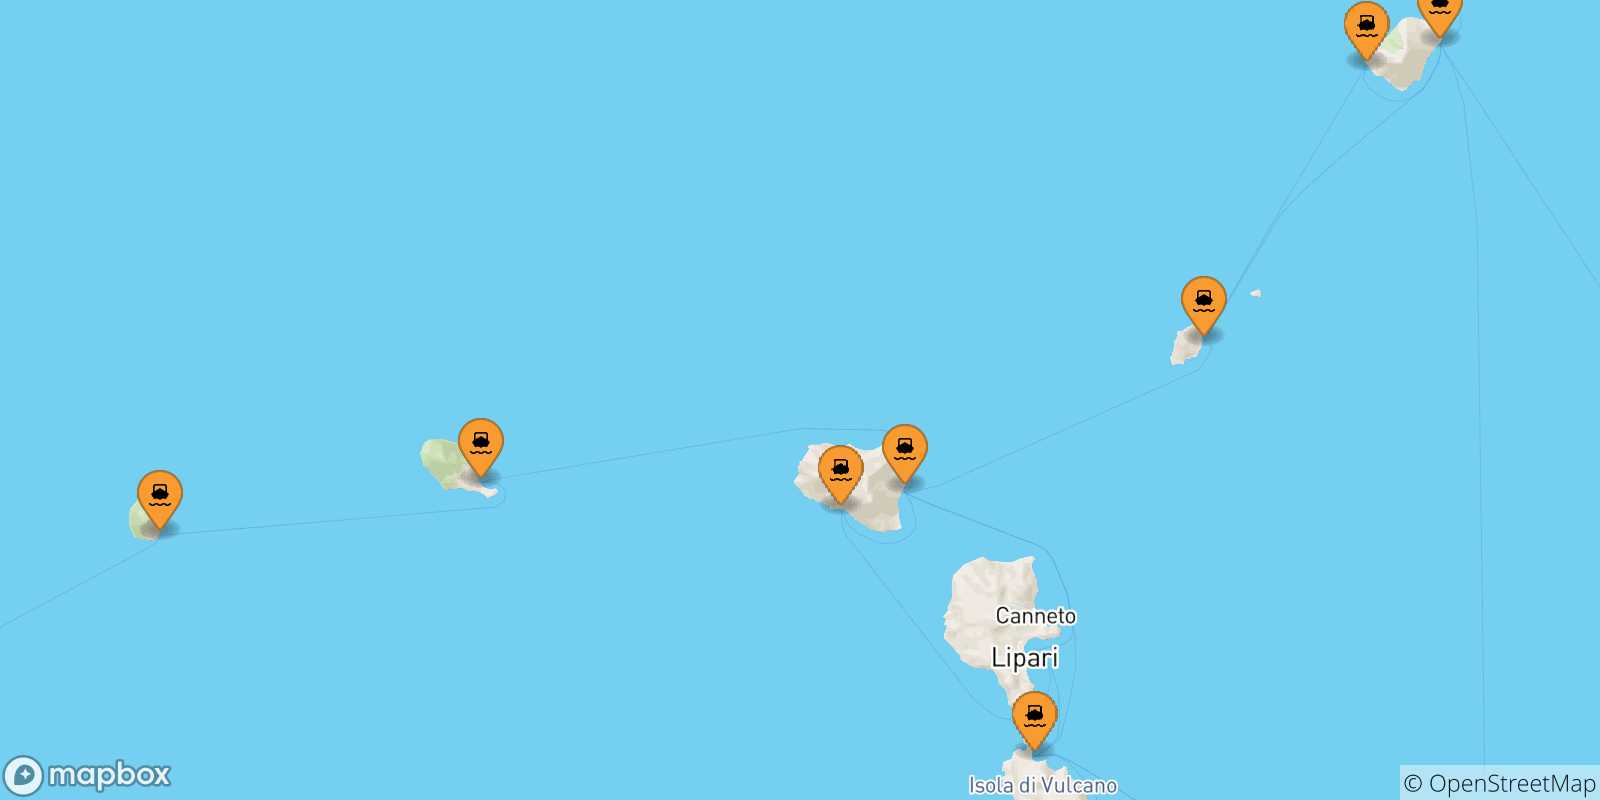 Mappa delle possibili rotte tra le Isole Eolie e Lipari